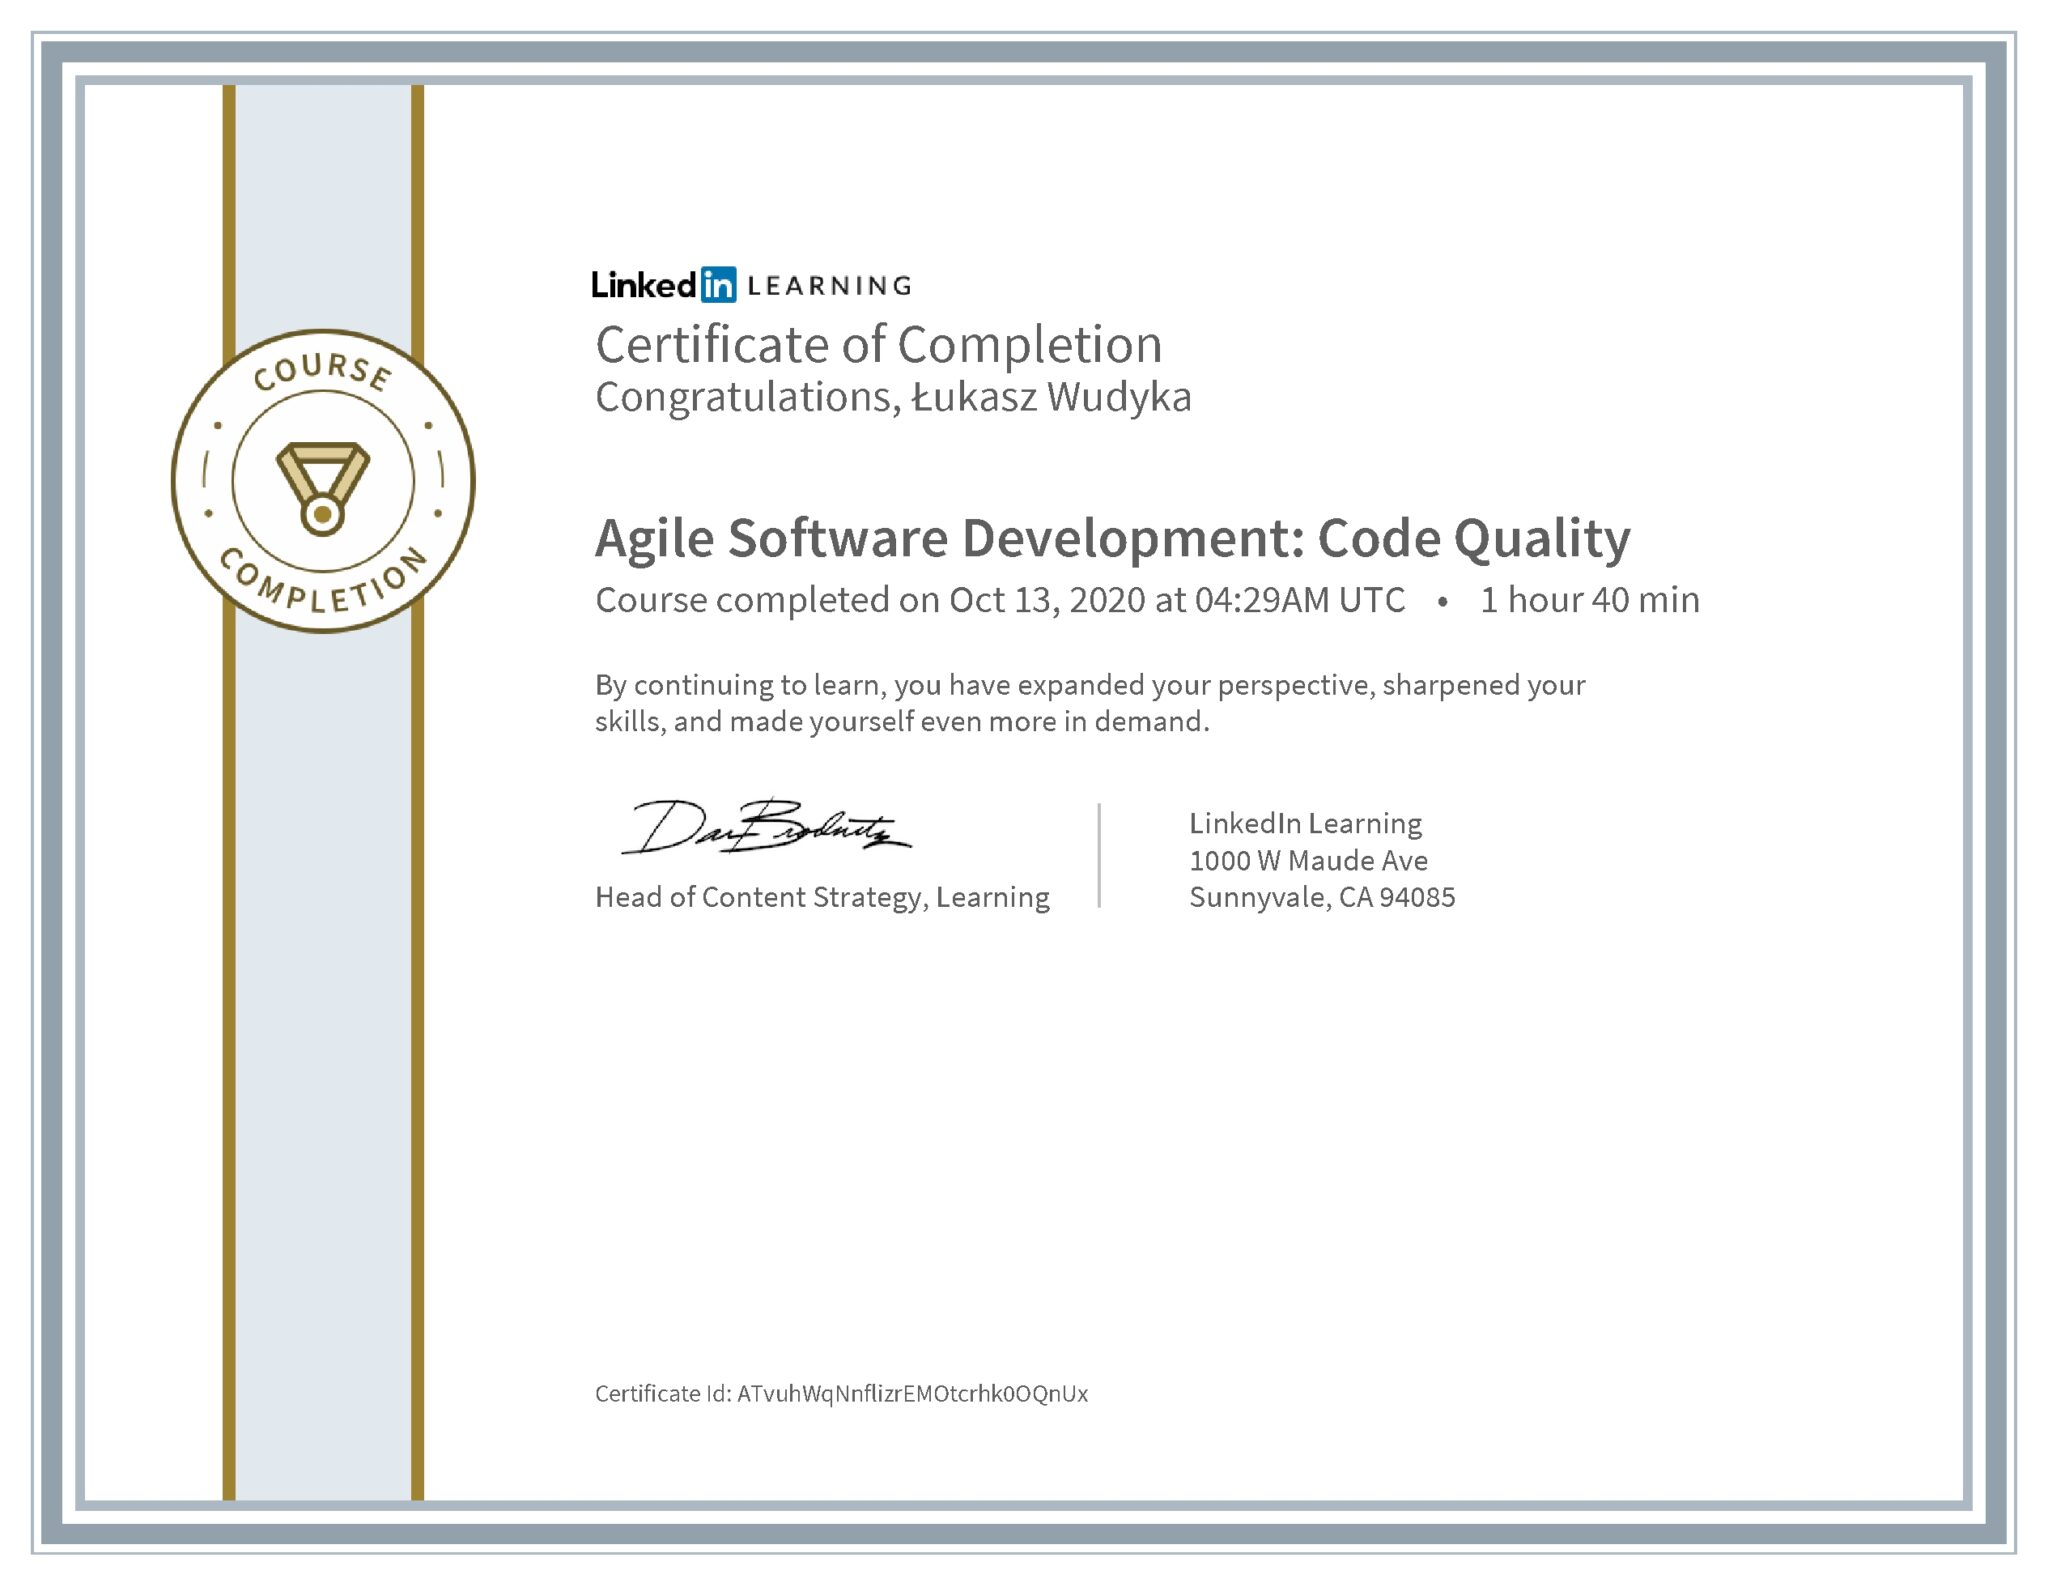 Łukasz Wudyka certyfikat LinkedIn Agile Software Development: Code Quality